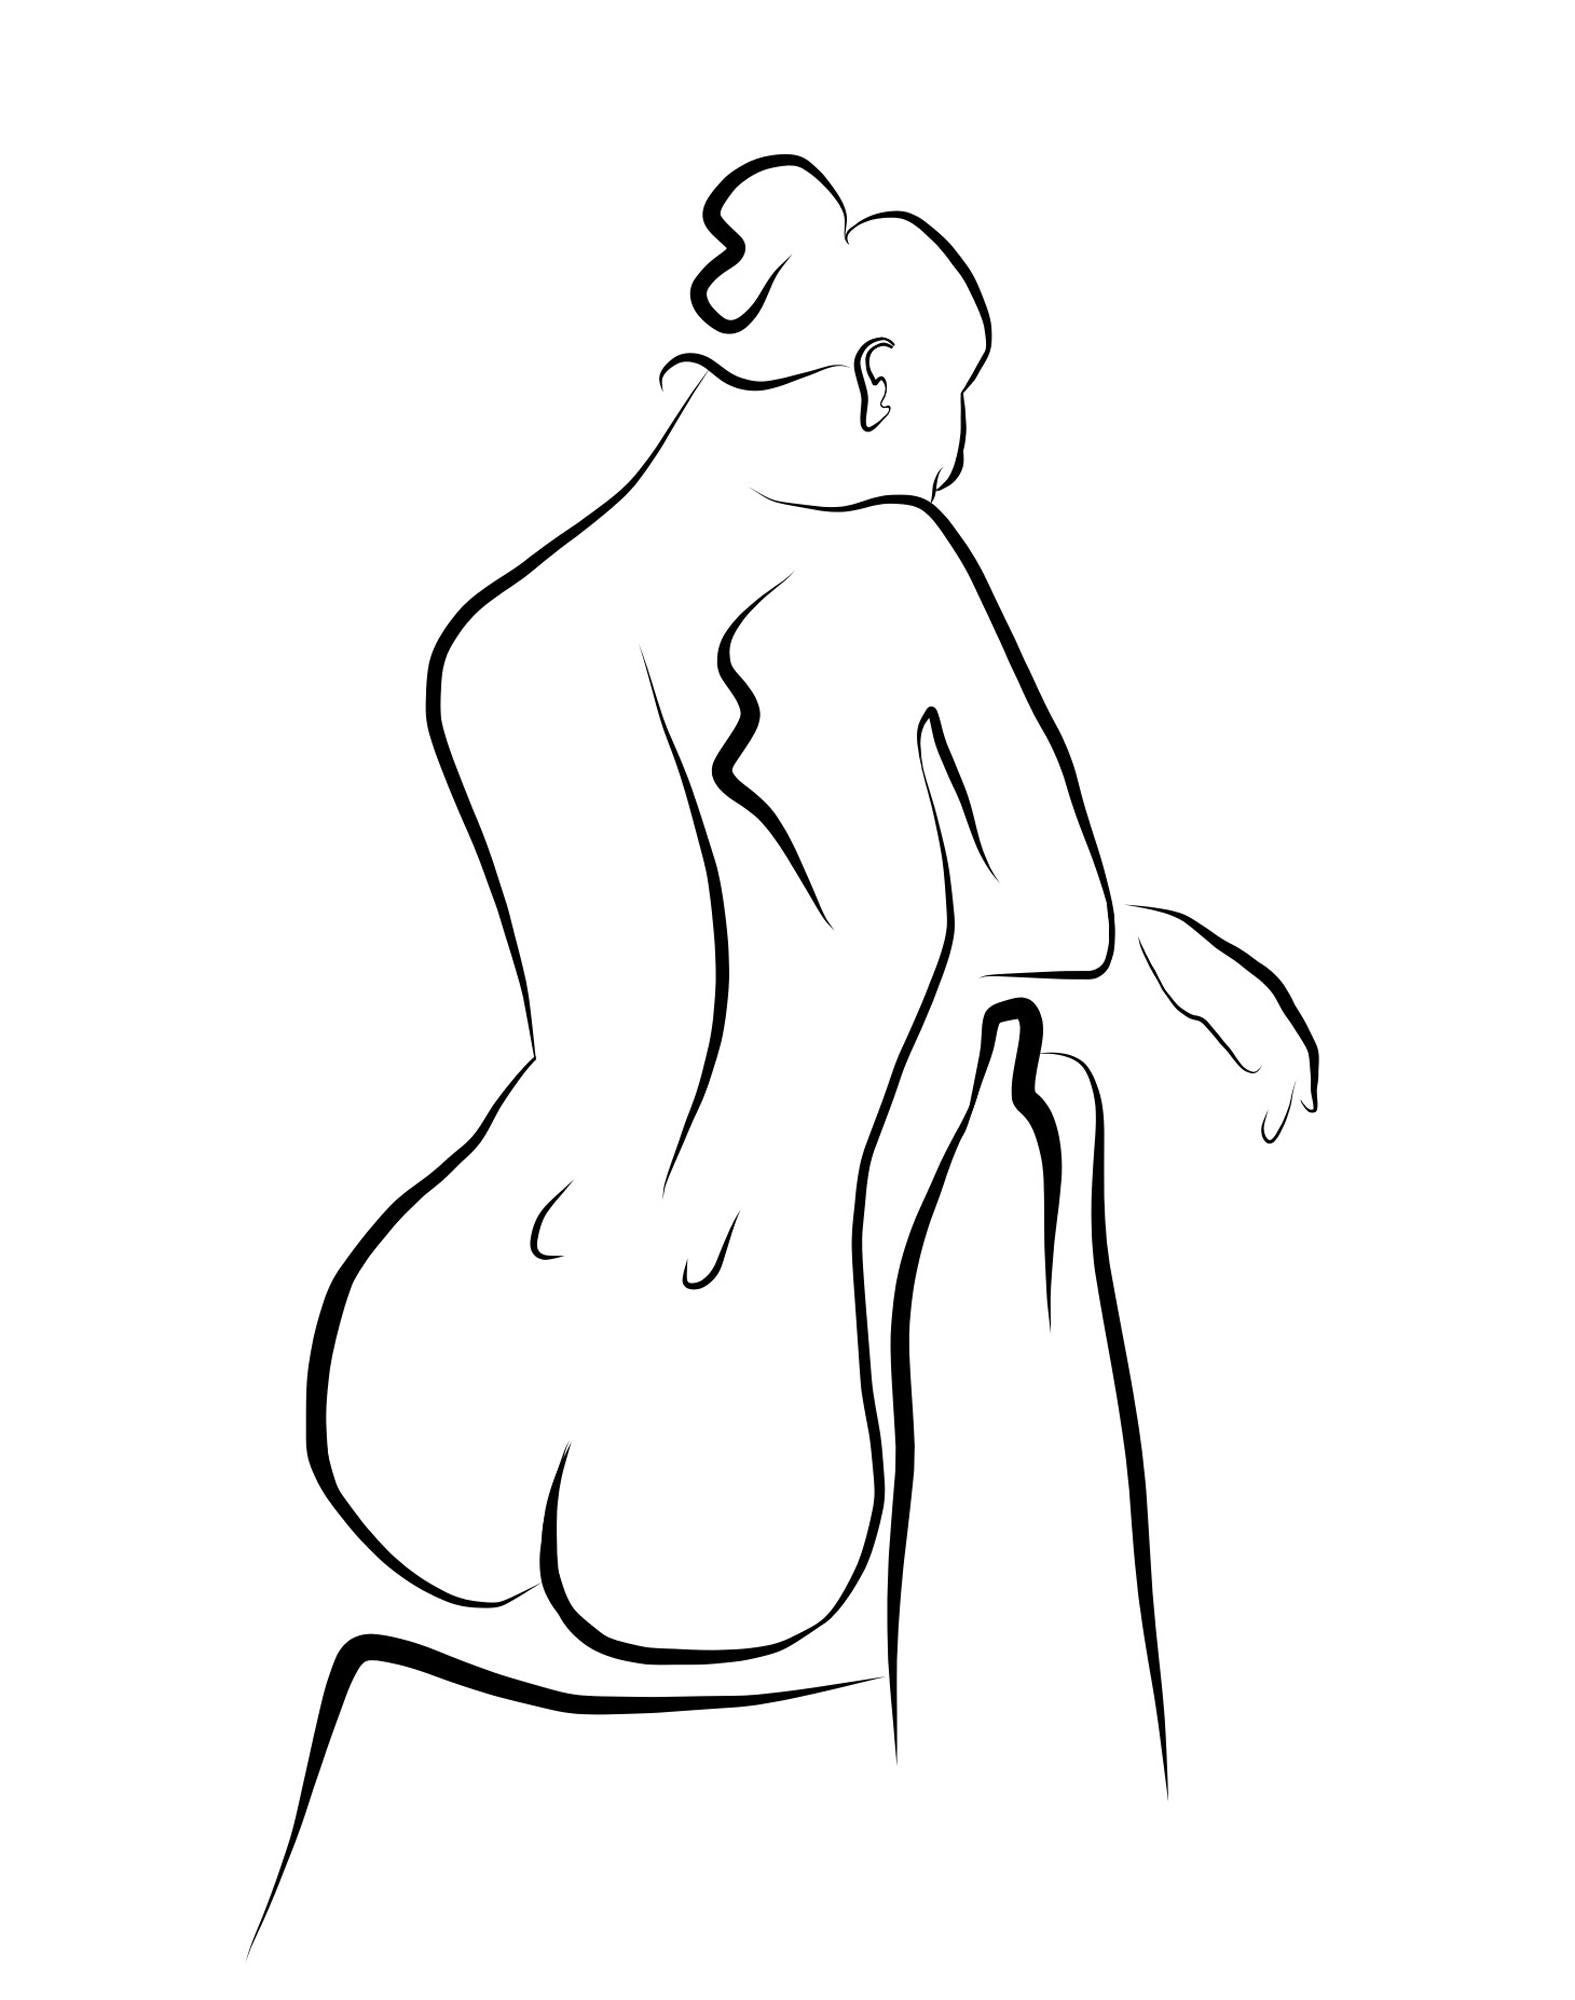 Haiku #57, 1/50 - Digitale Vector-Zeichnung eines sitzenden weiblichen Akts aus der Rückseite